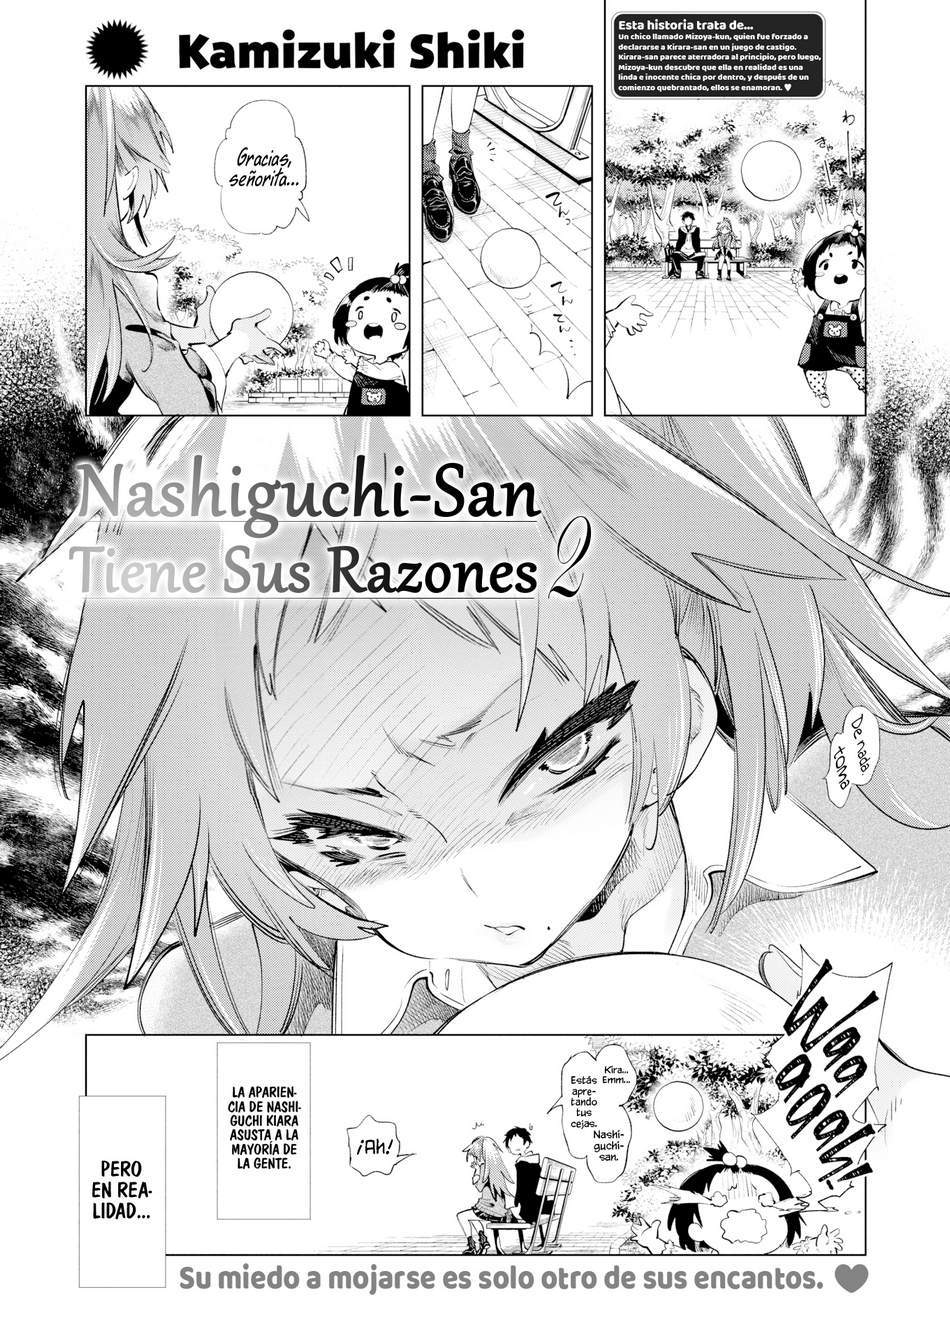 Nashiguchi-san tiene sus razones #2 - Page #1